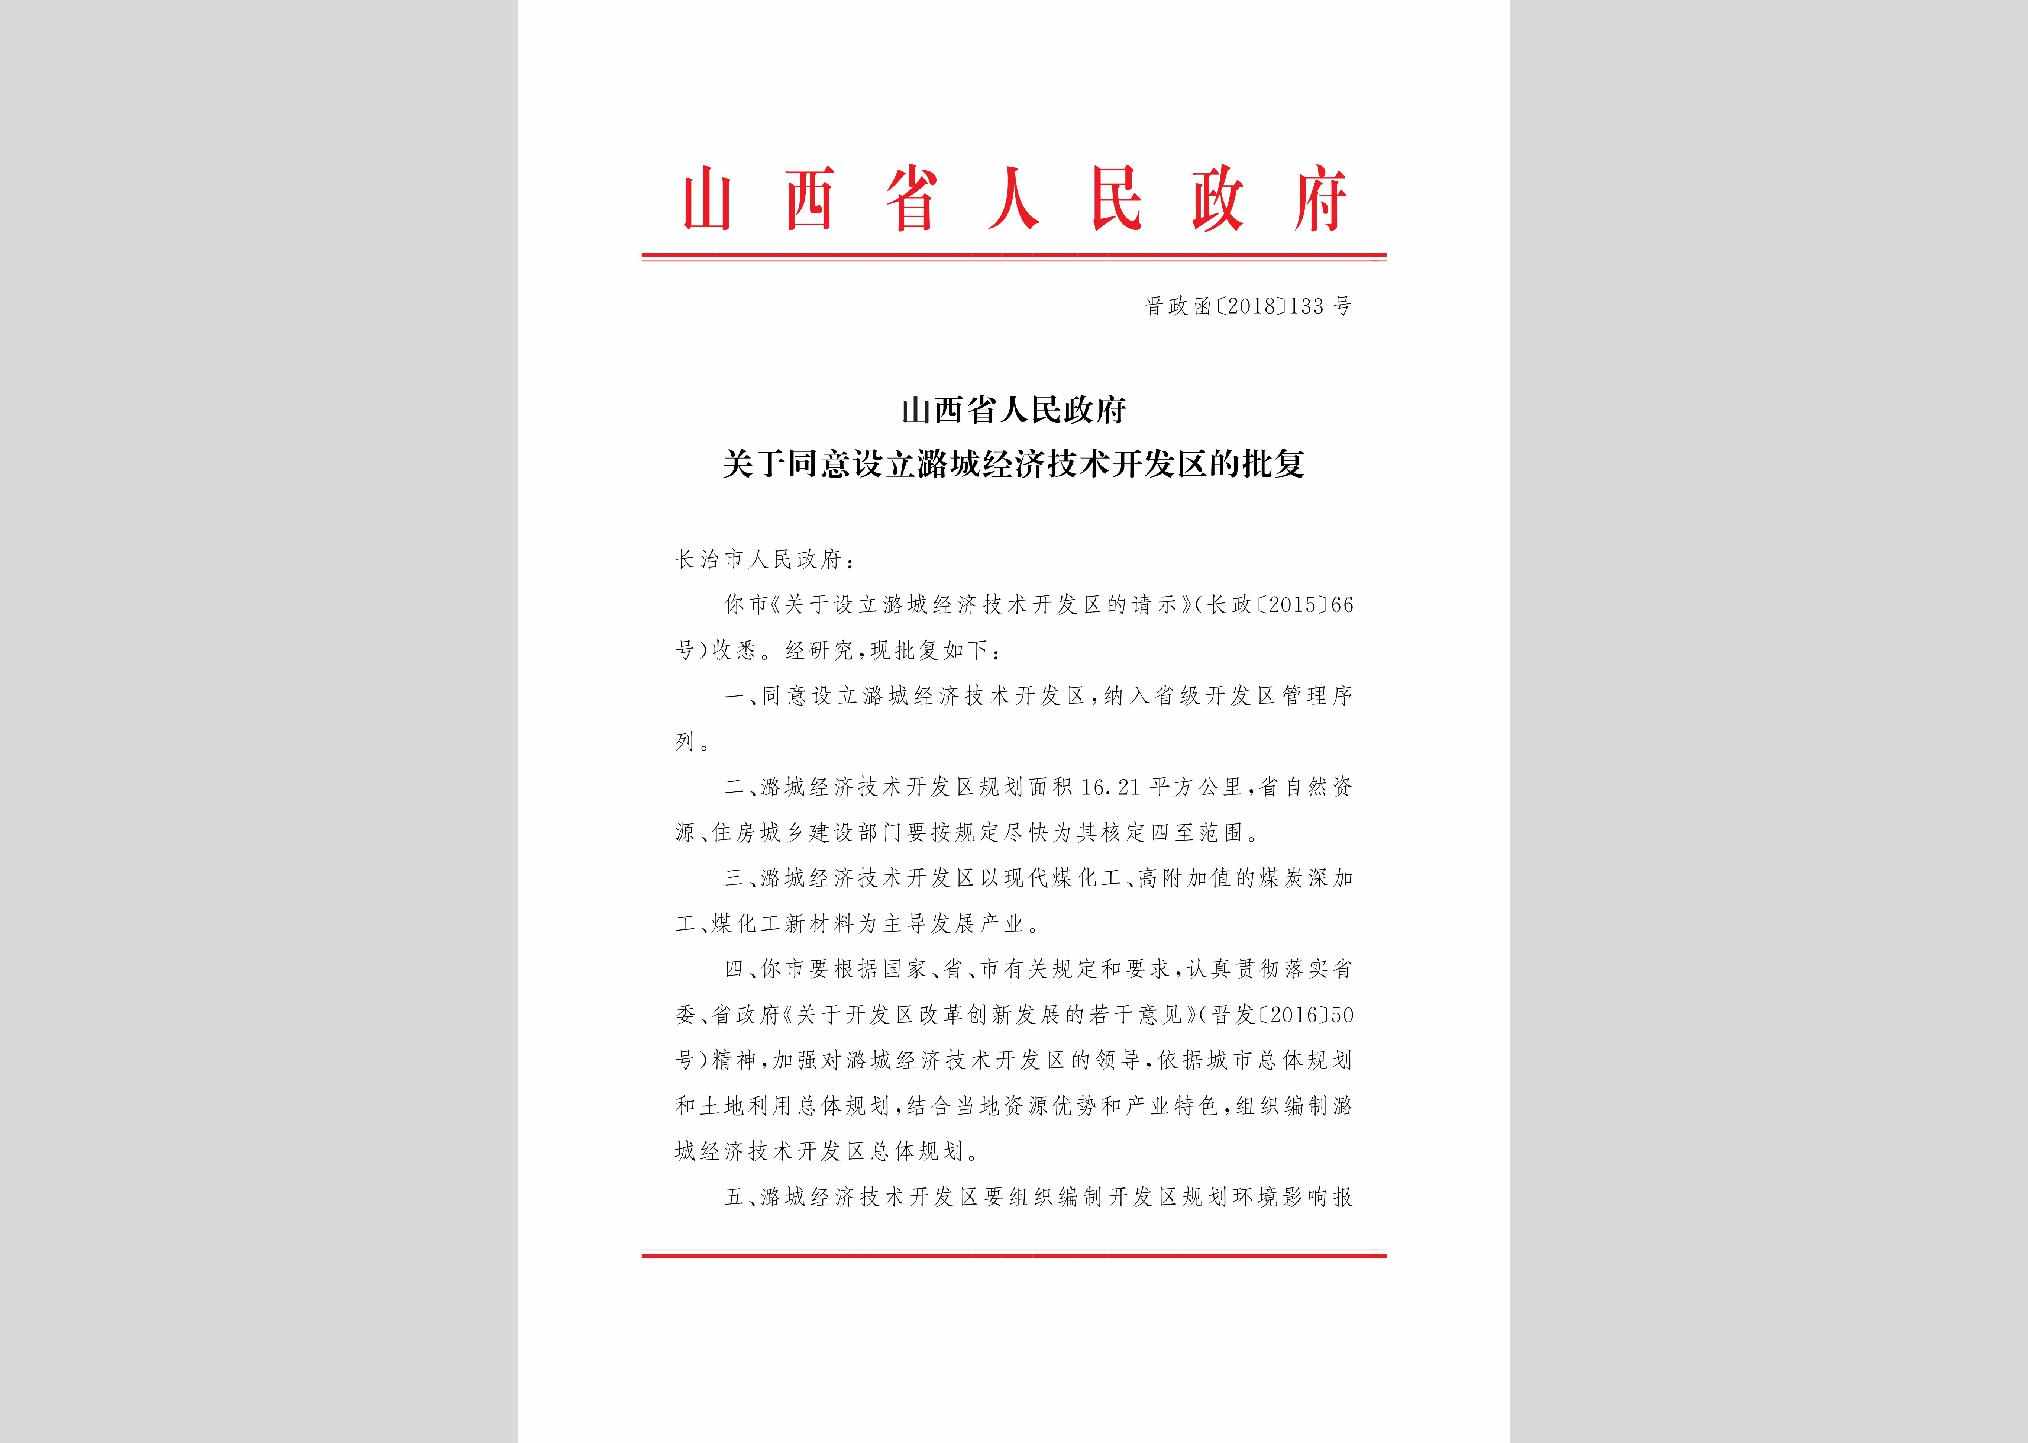 晋政函[2018]133号：山西省人民政府关于同意设立潞城经济技术开发区的批复